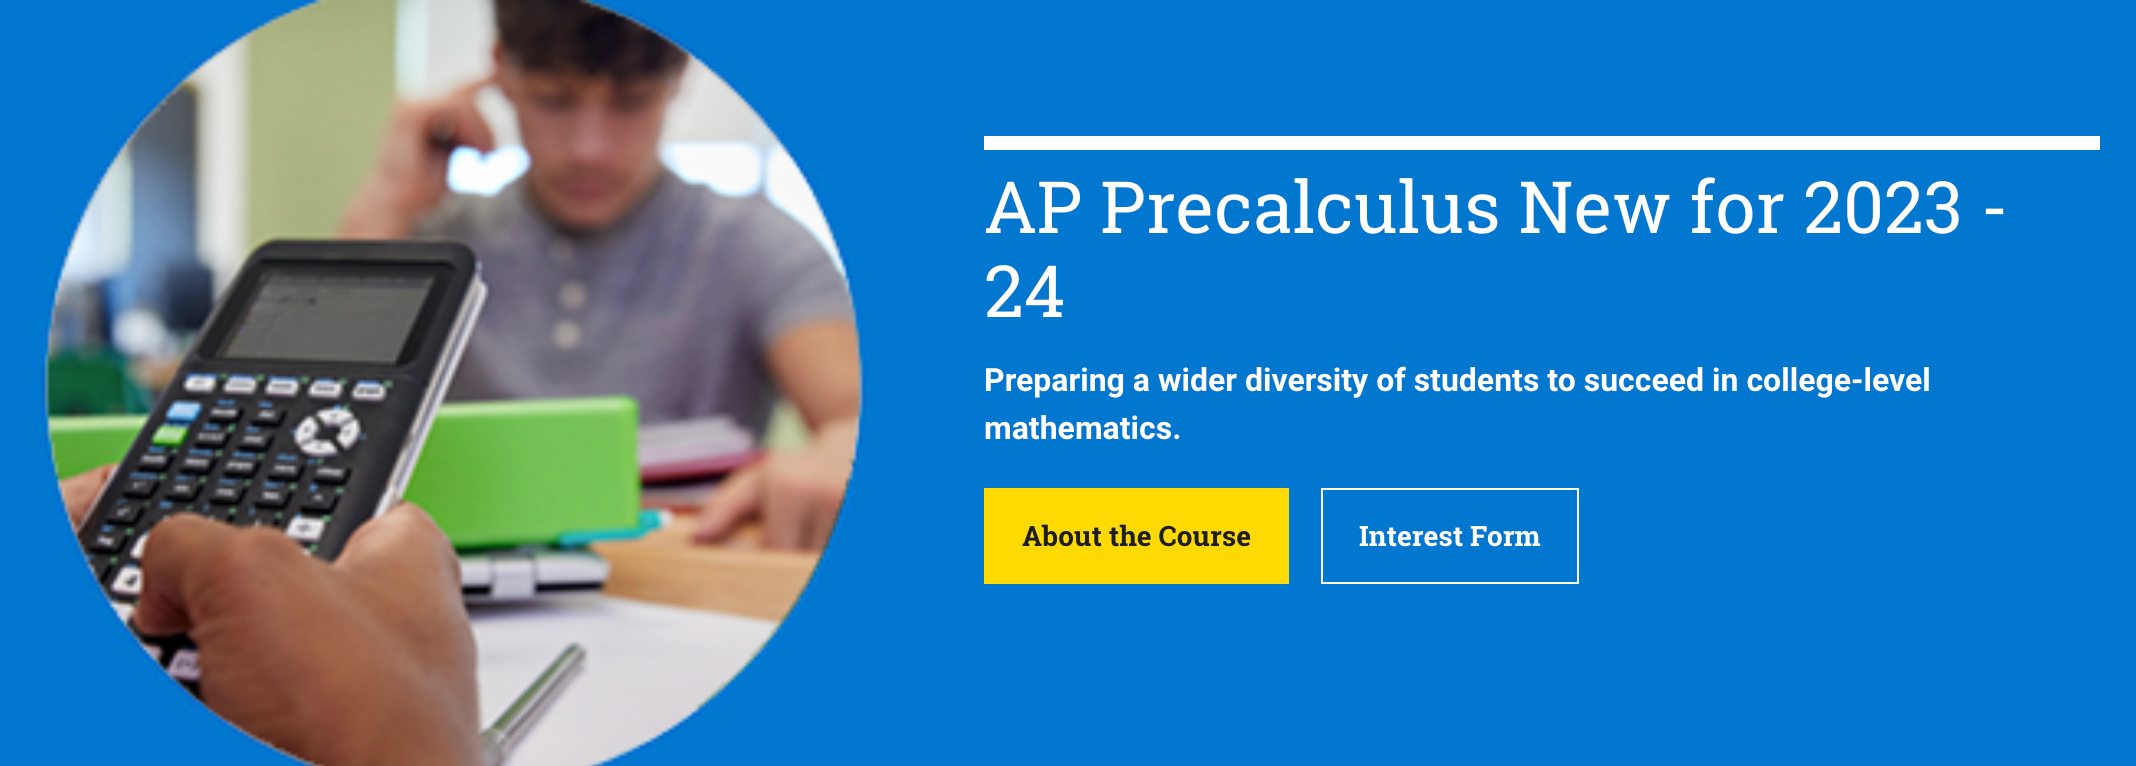 CB官方消息：新增AP Precalculus预备微积分科目，将于2023年秋季正式推出